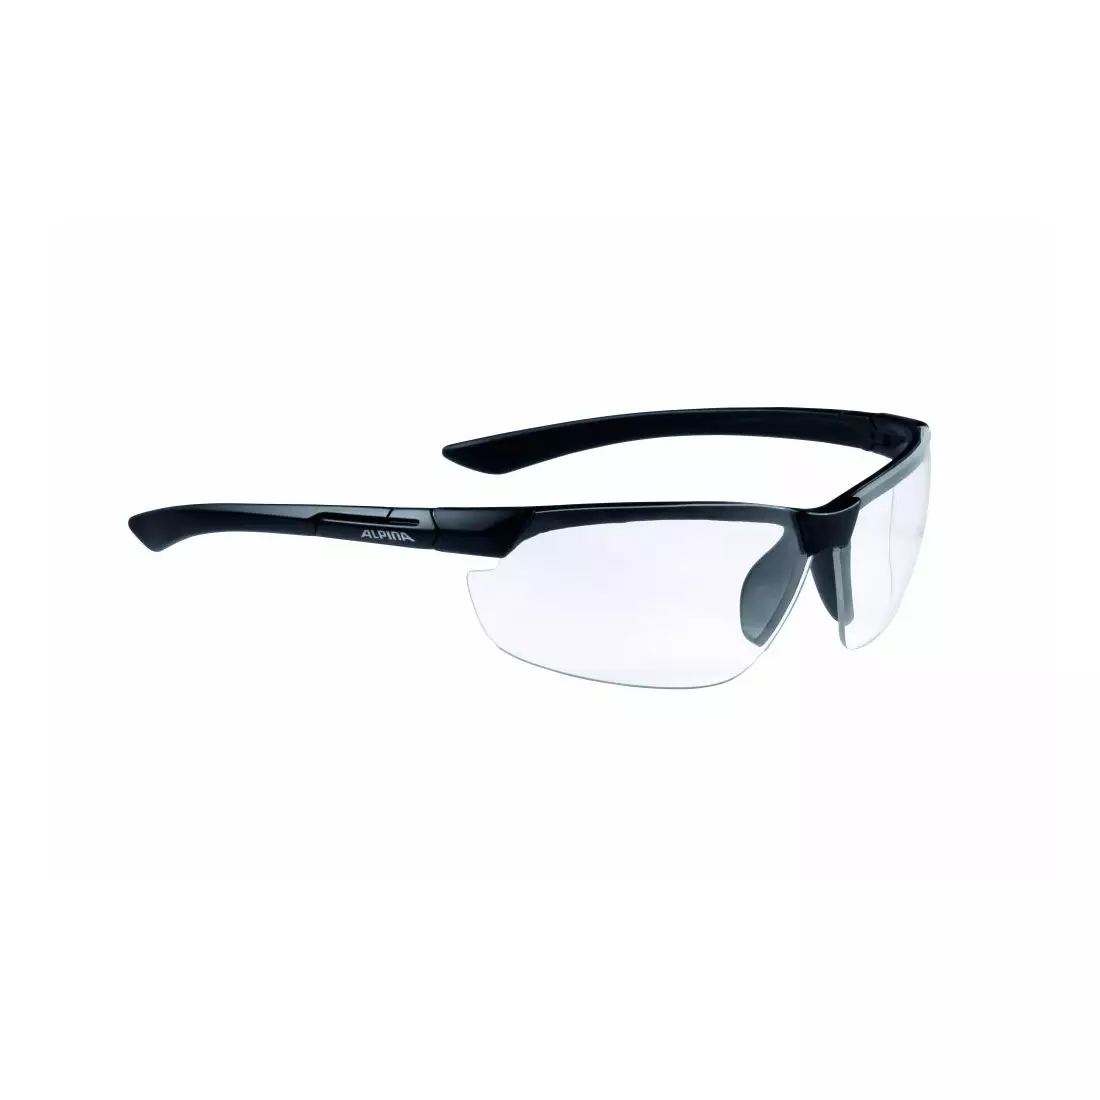 ALPINA ochelari sportivi draff black matt, sticlă S0 A8558431